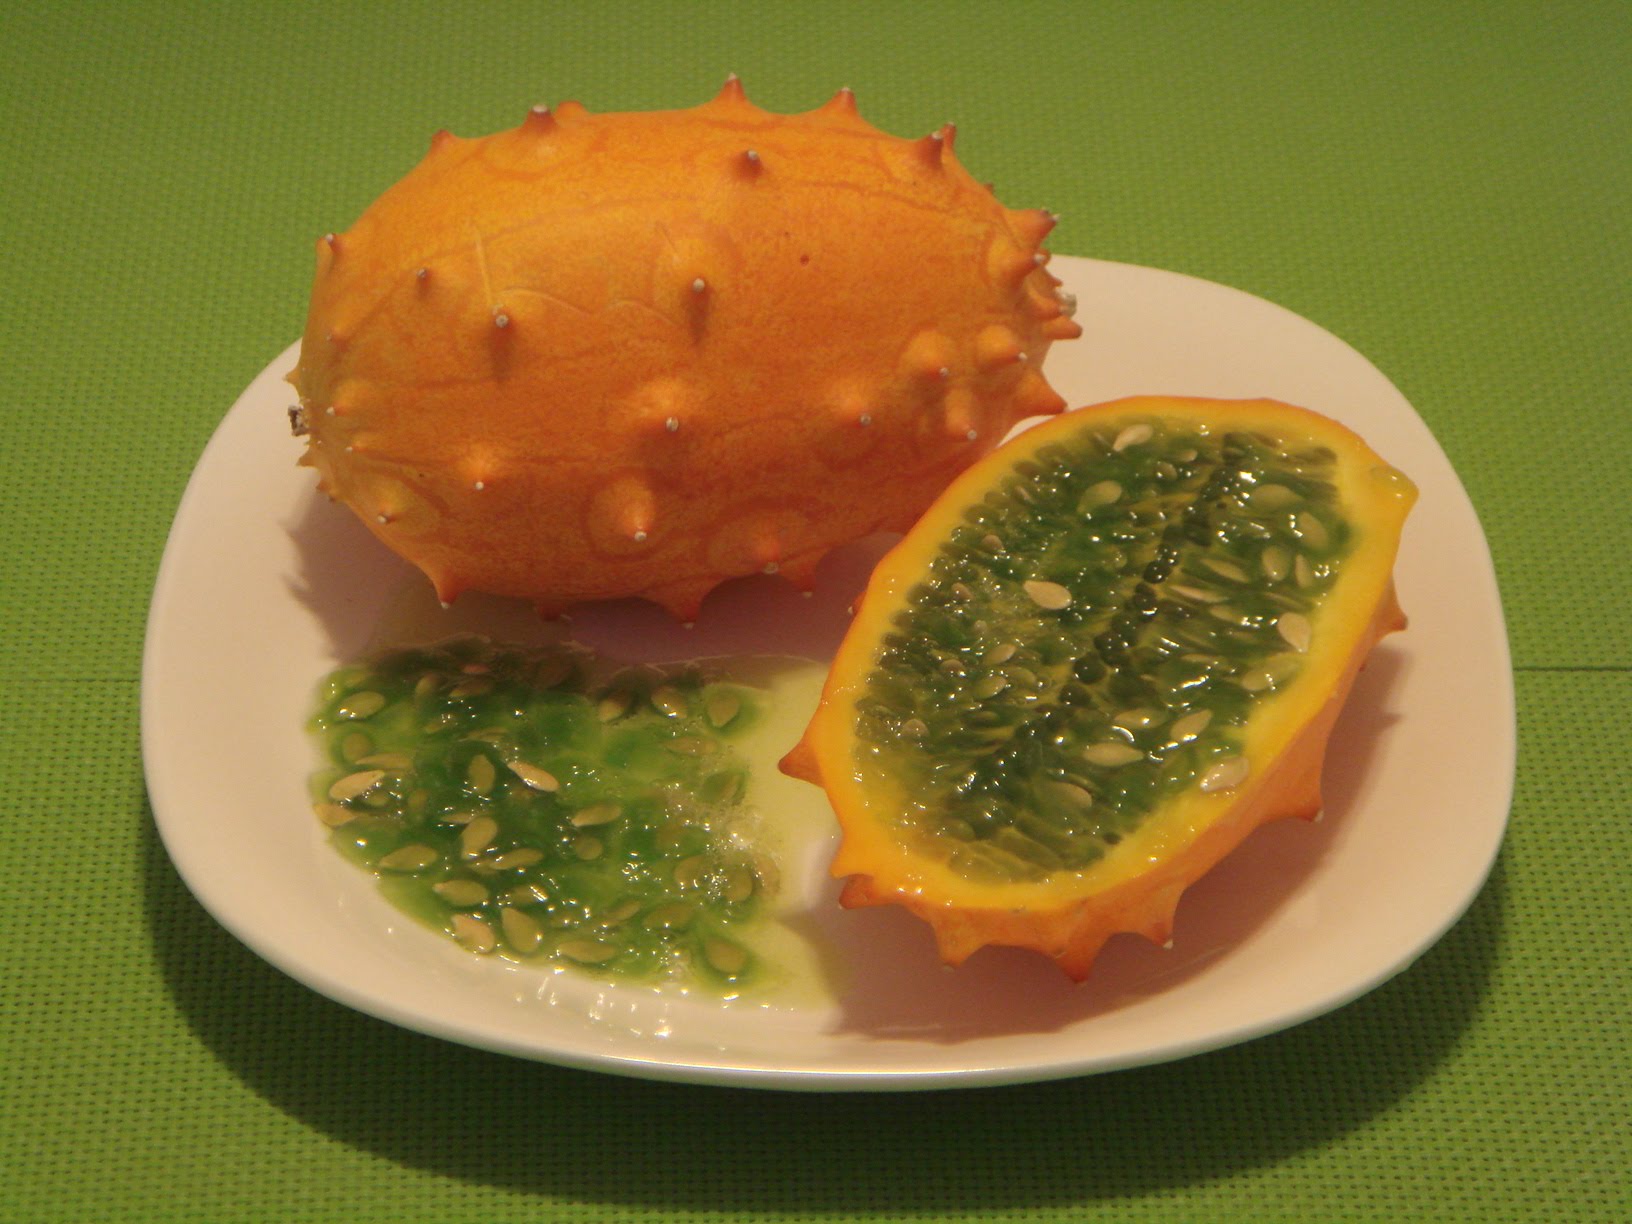 Horned Melon: How to Eat Kiwano Melon - YouTube